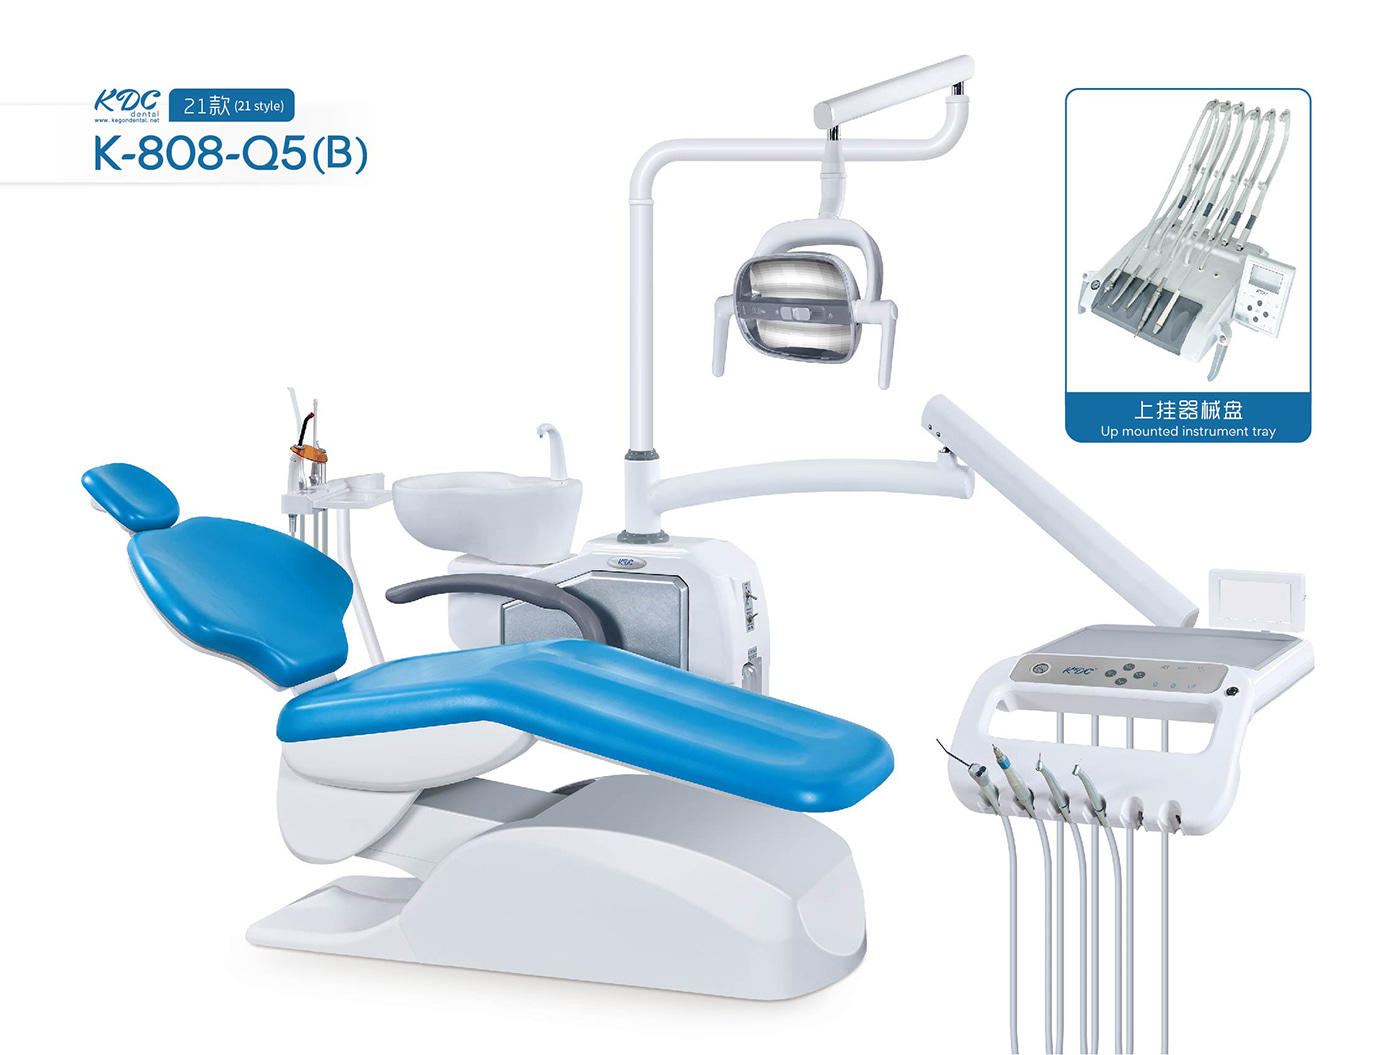 Dental Chair K-808-Q5 (B) 21 Style